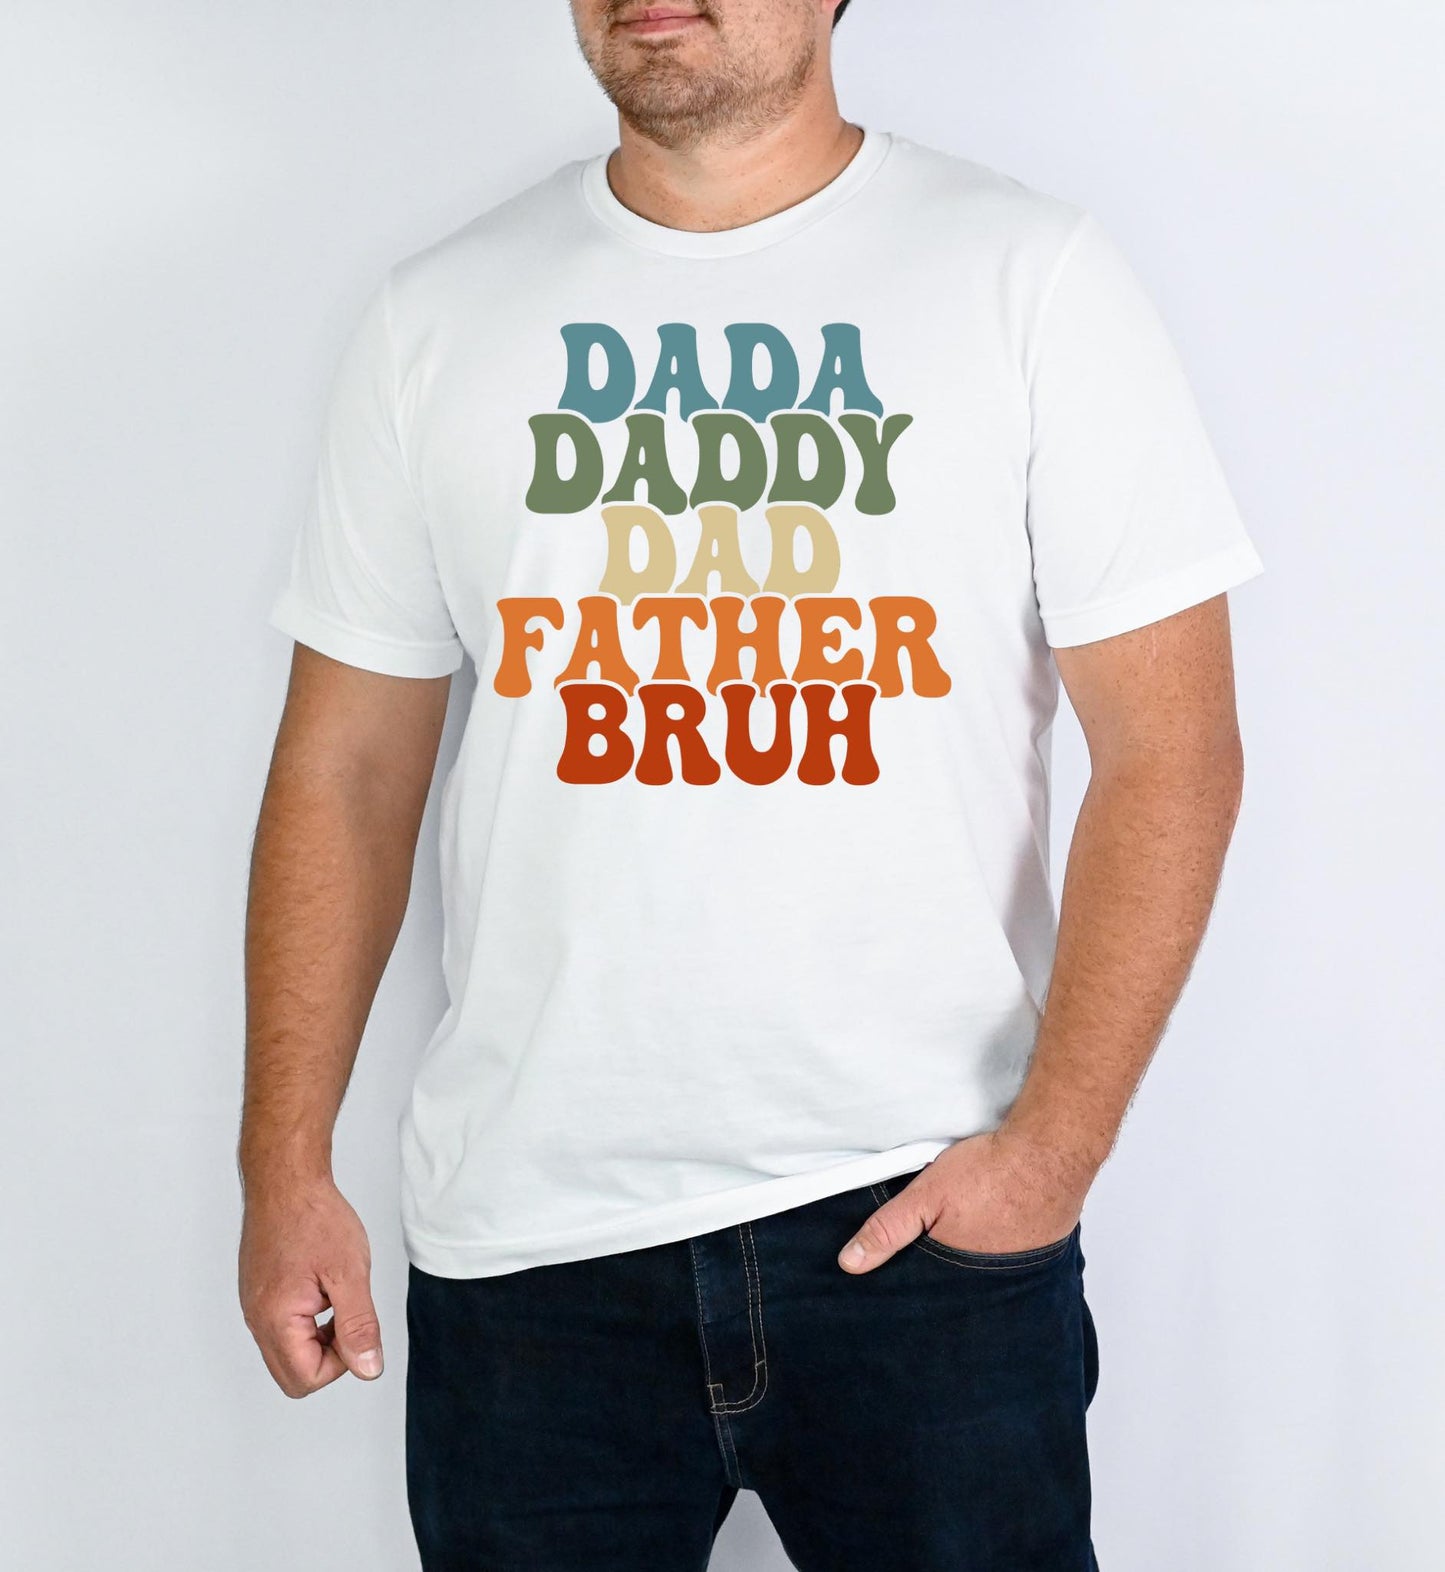 Dada Daddy Dad Father Bruh